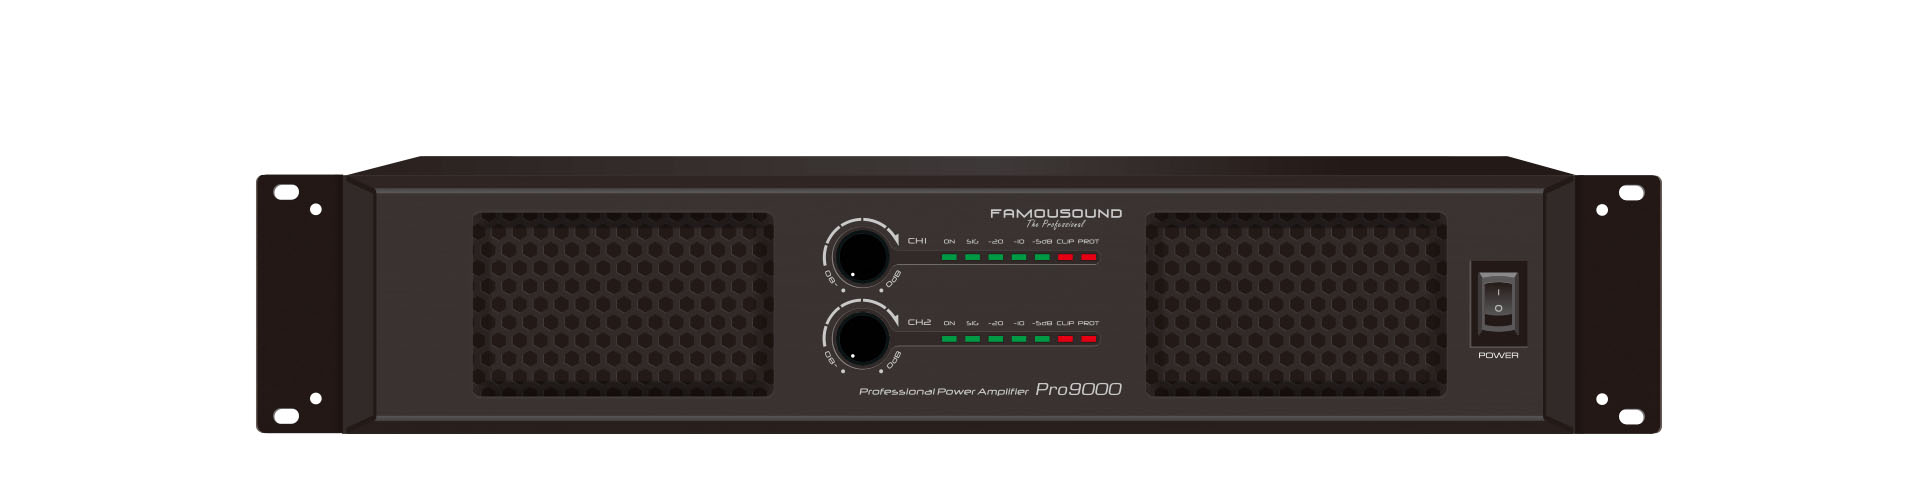 Pro9000系列